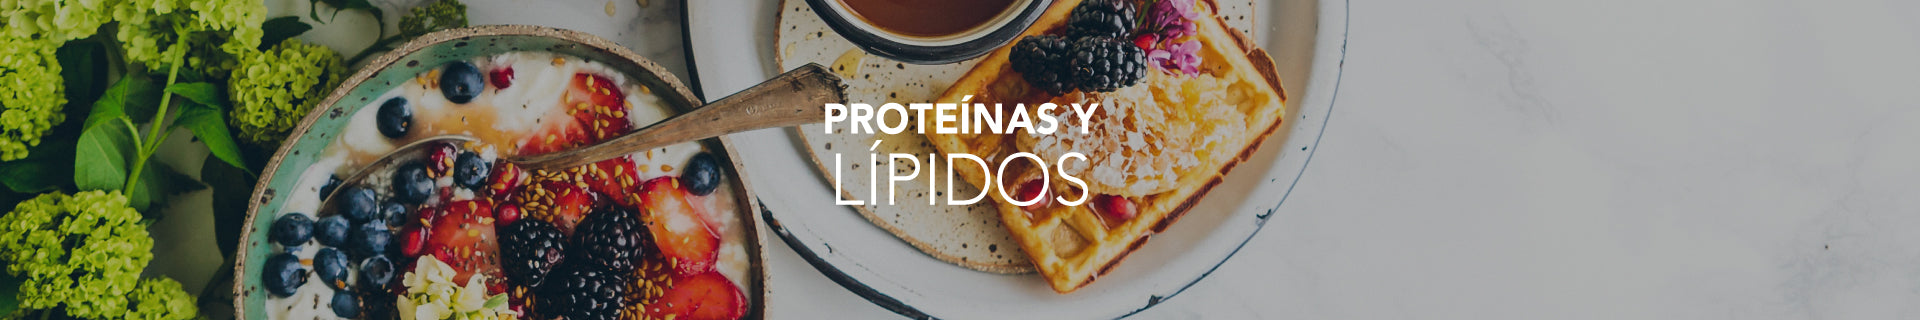 Proteinas y Lípidos